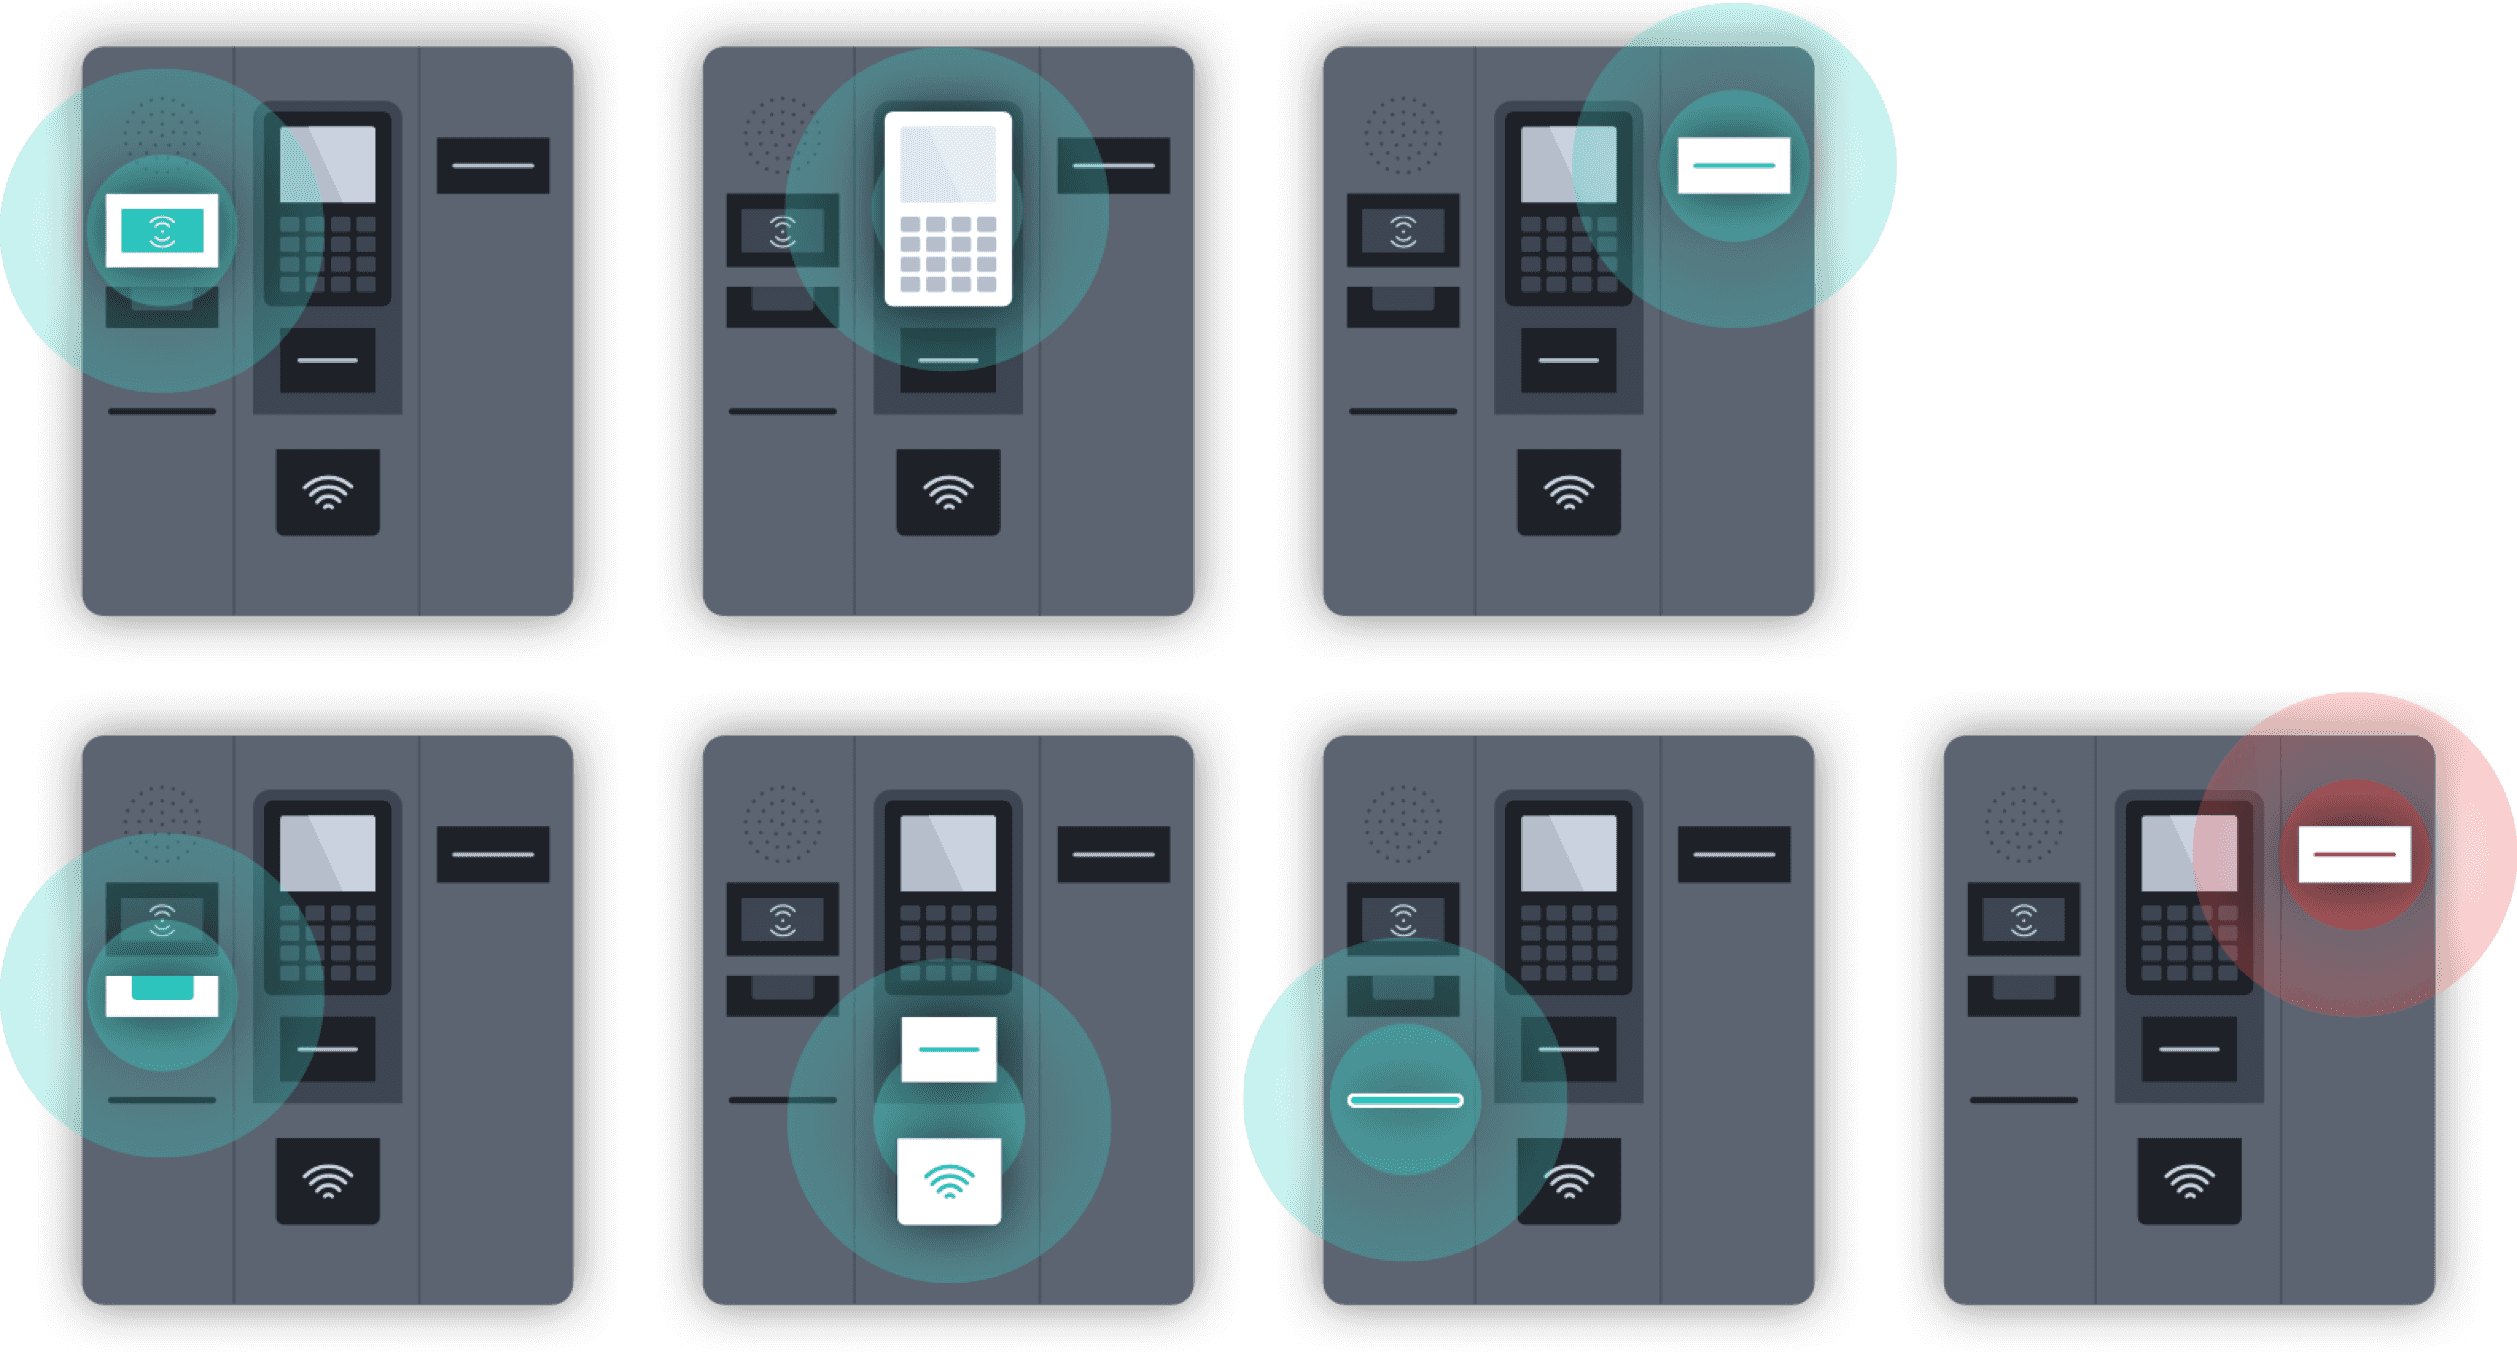 Illustraties voor gebruikers van de zelfkaartautomaat voor benzinestations